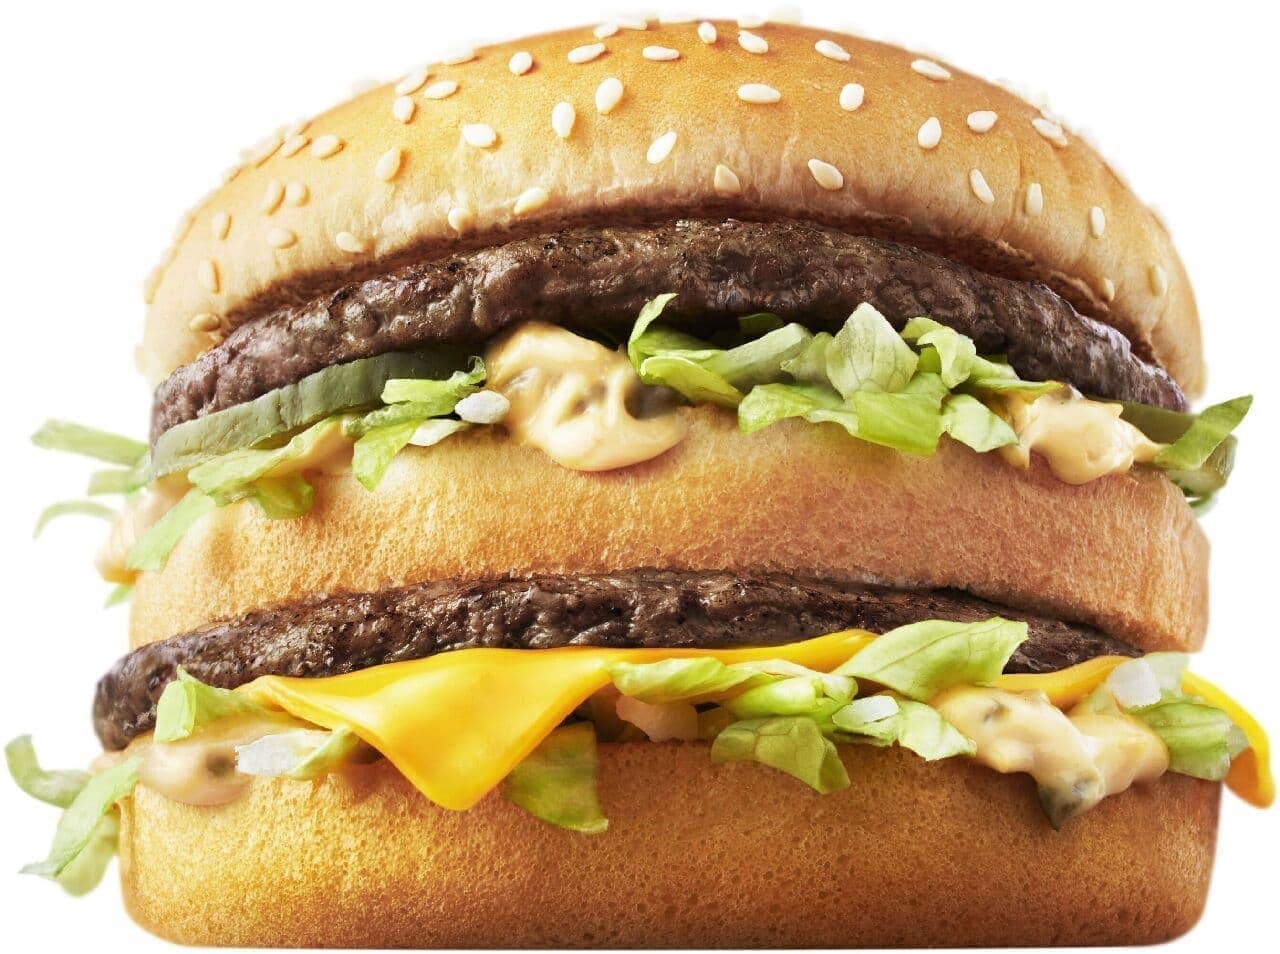 McDonald's "Big Mac".